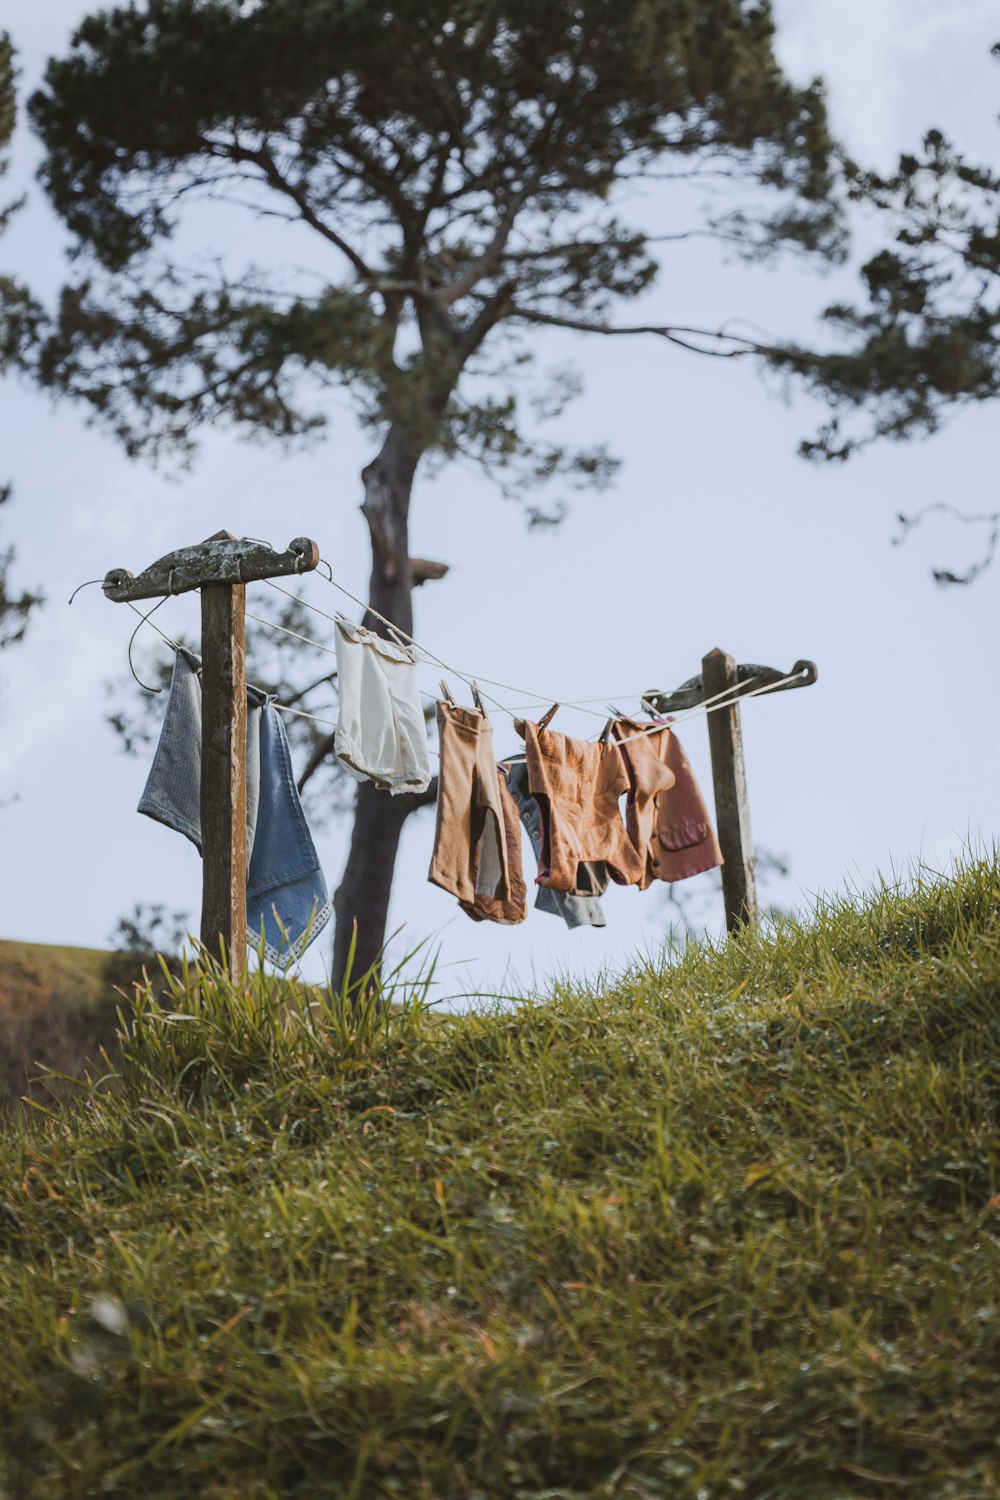 Vêtements suspendus pour sécher sur une corde à linge photo – Photo  Nouvelle-Zélande Gratuite sur Unsplash